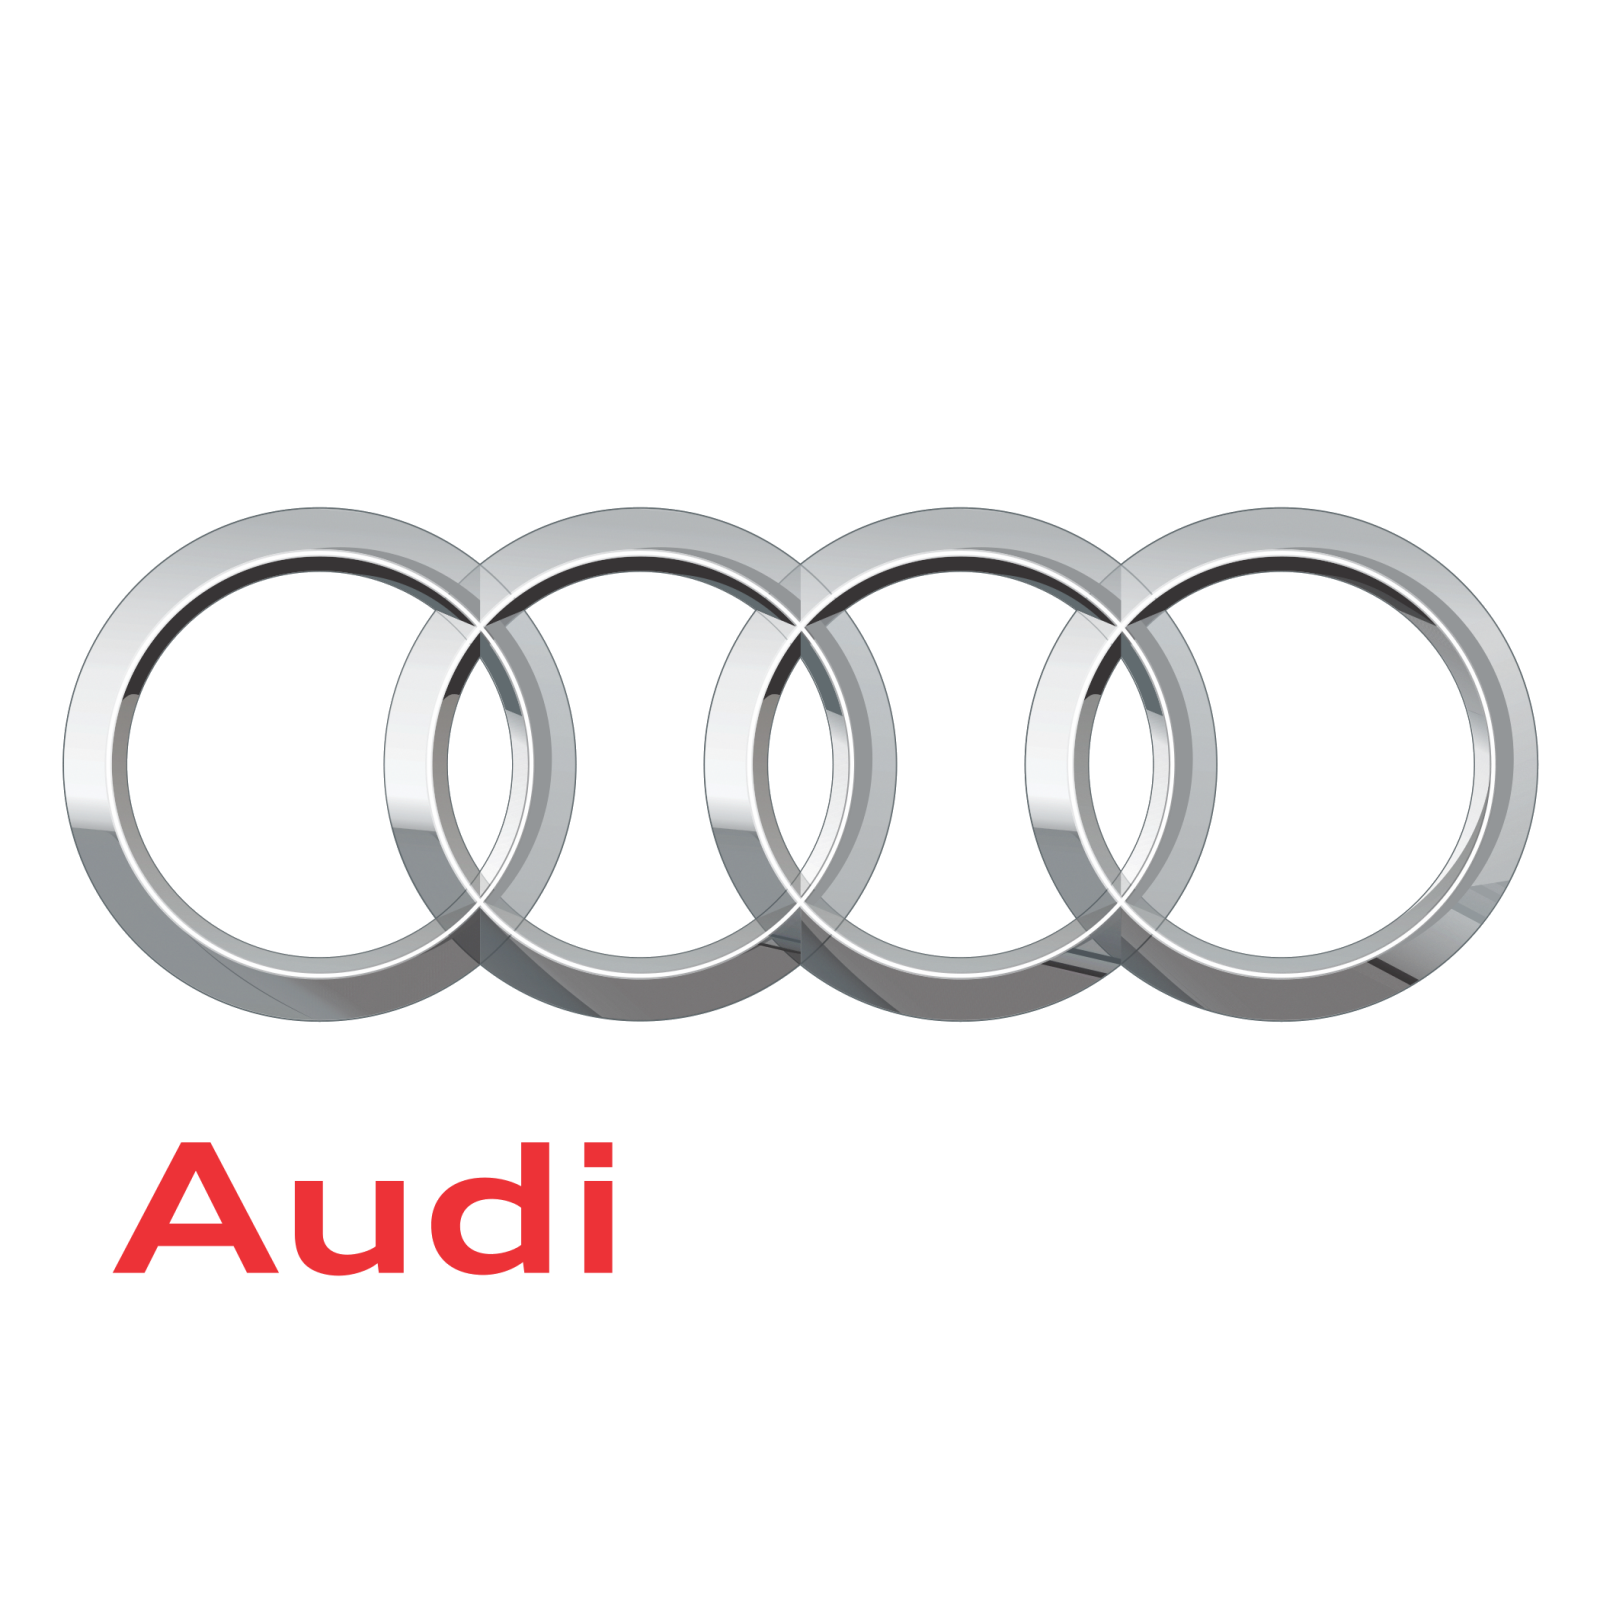 Audi1.png